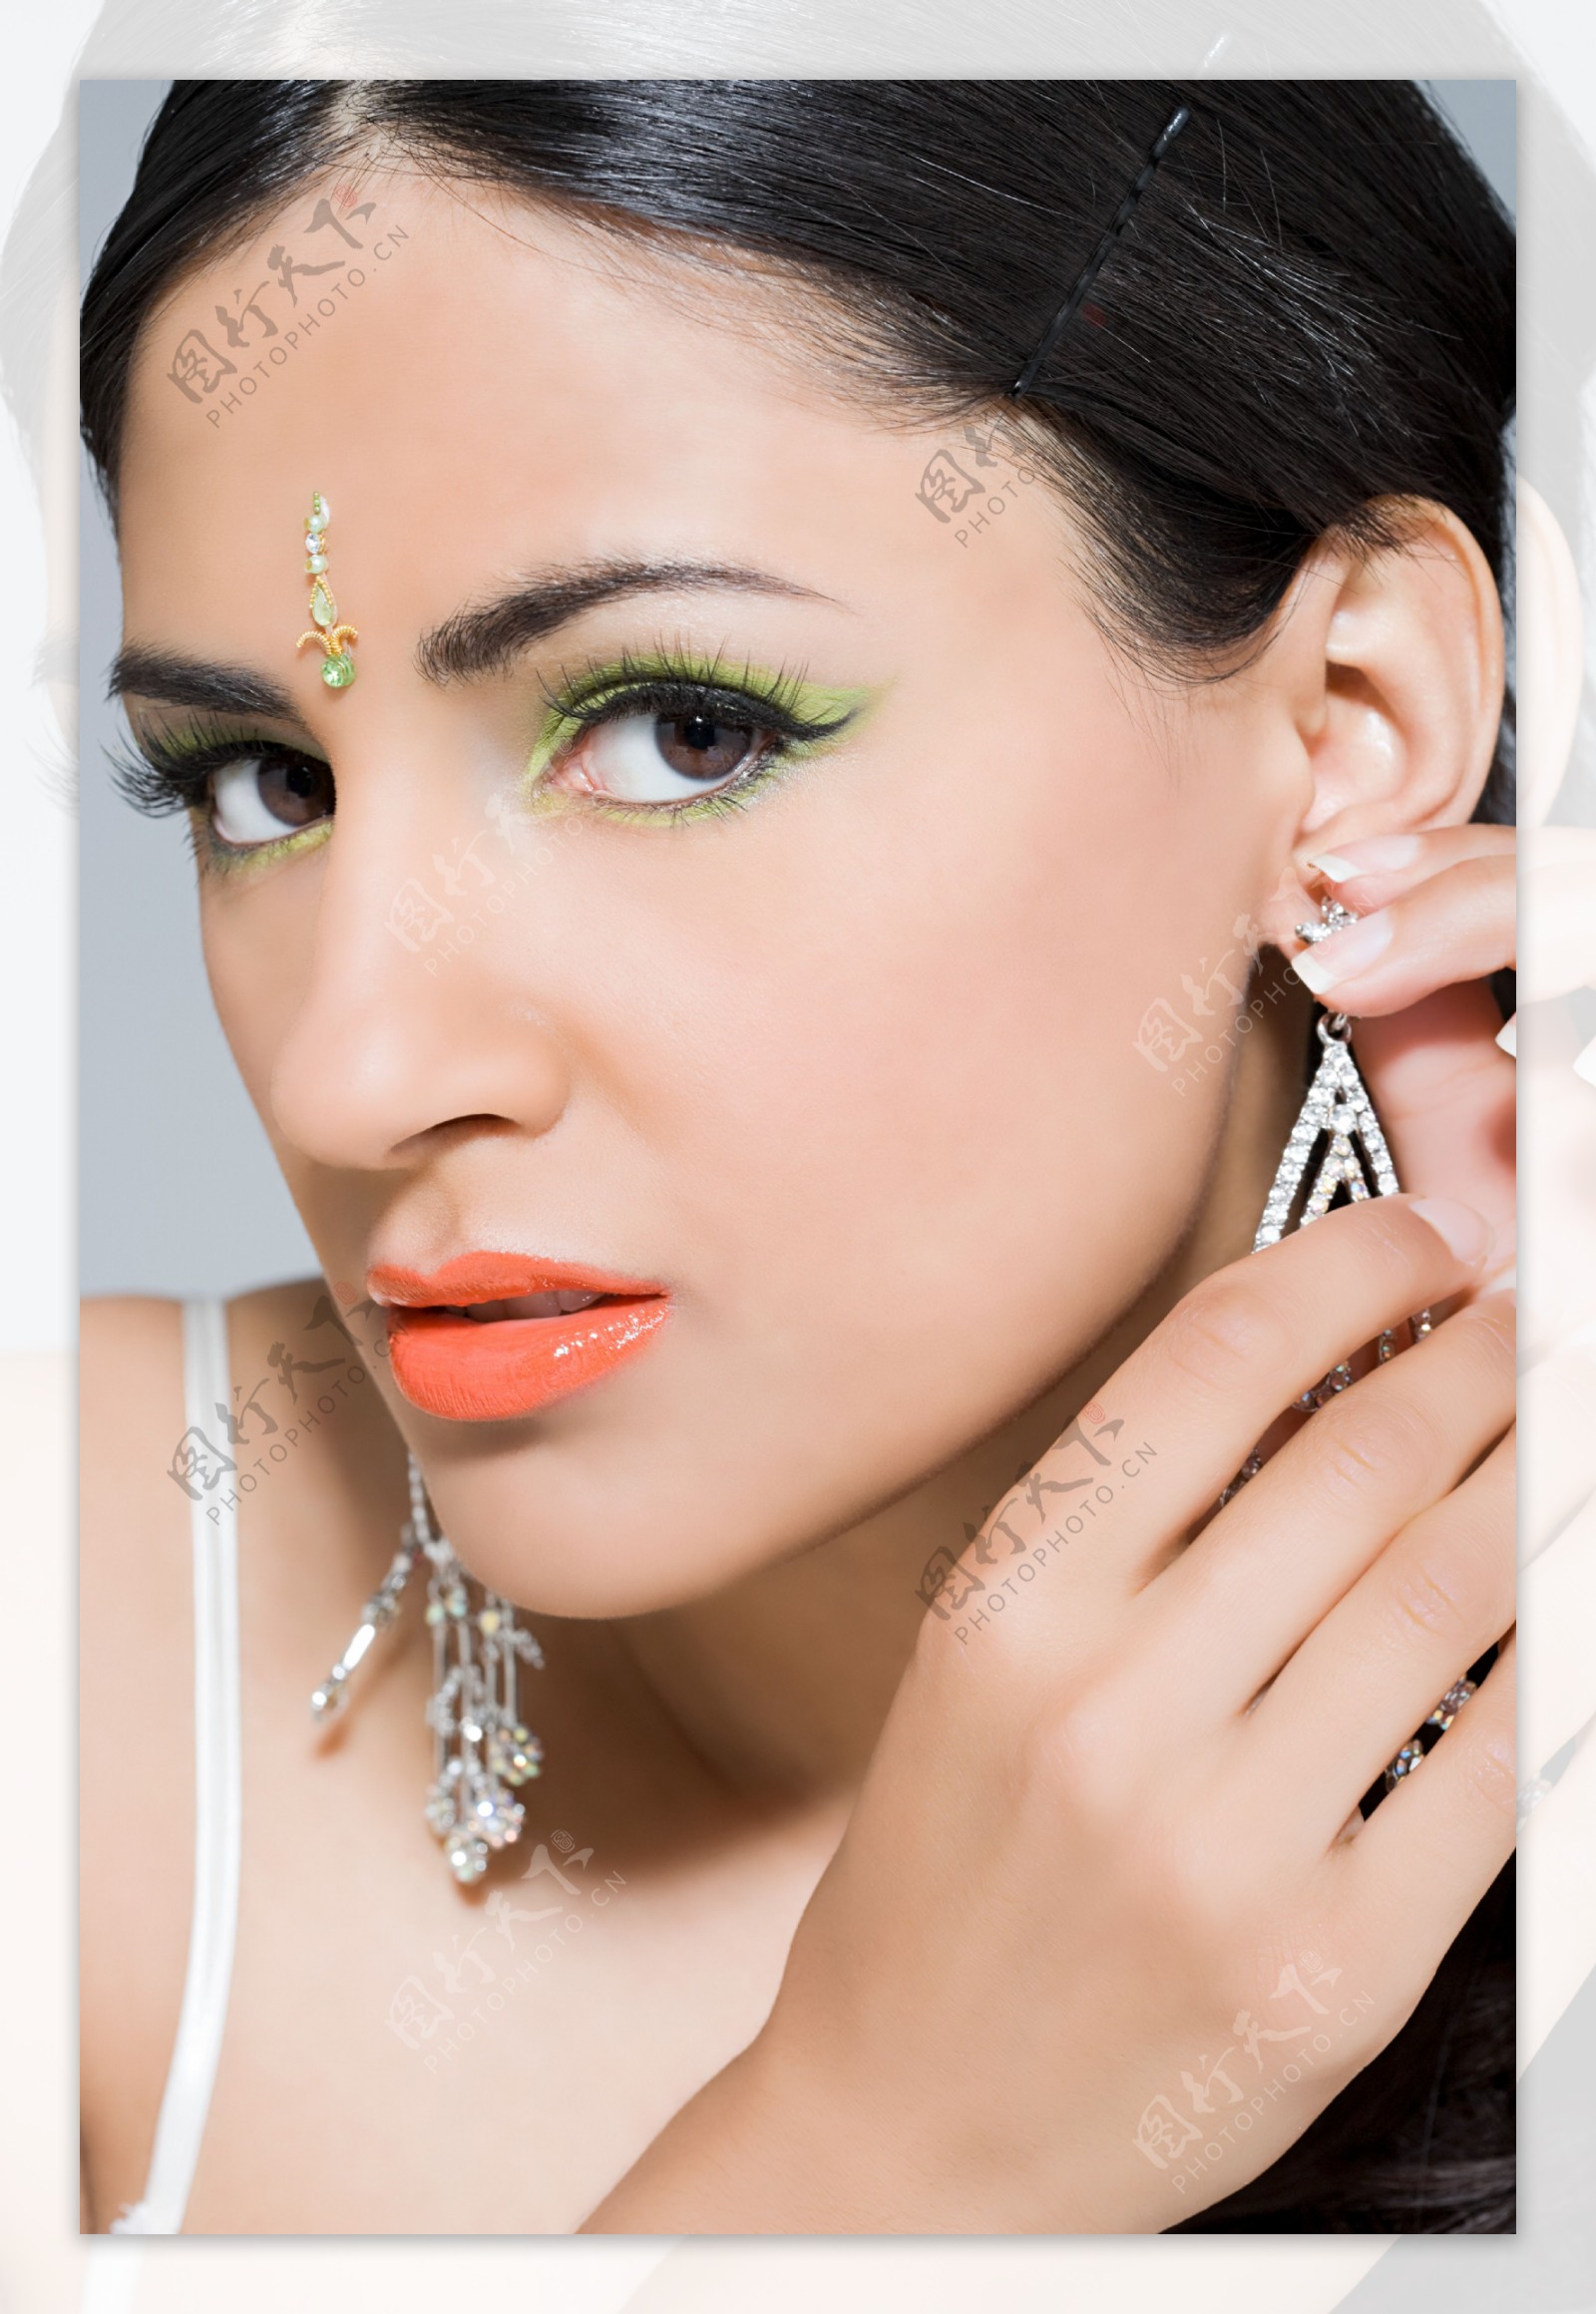 在戴耳环的印度美女图片